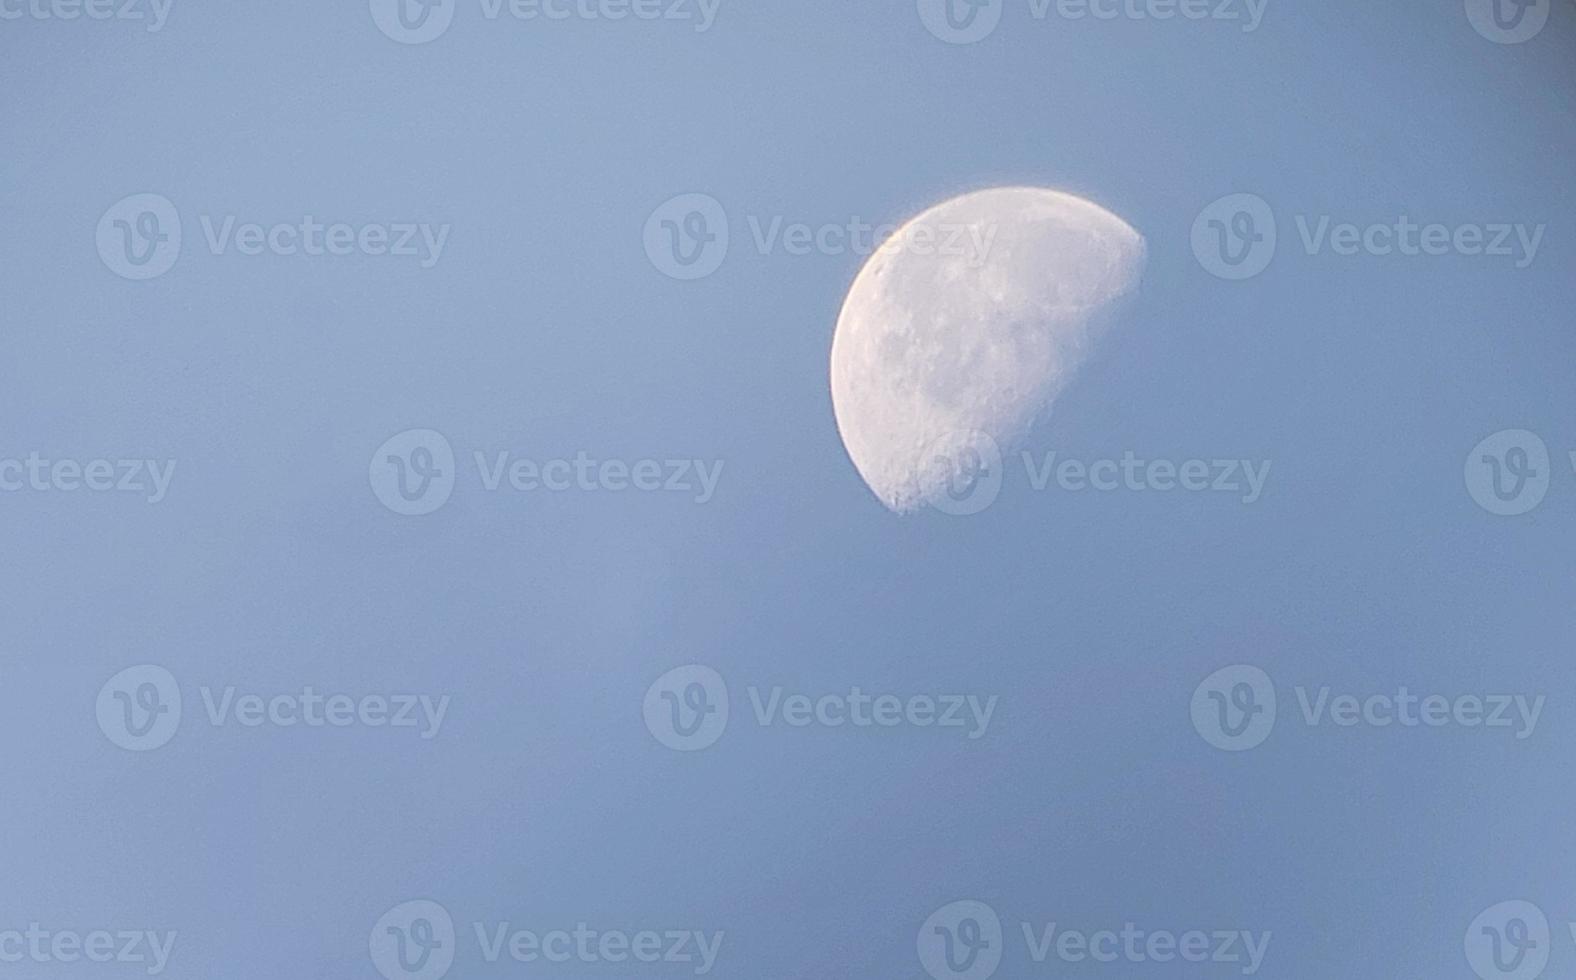 lua da manhã no céu azul foto